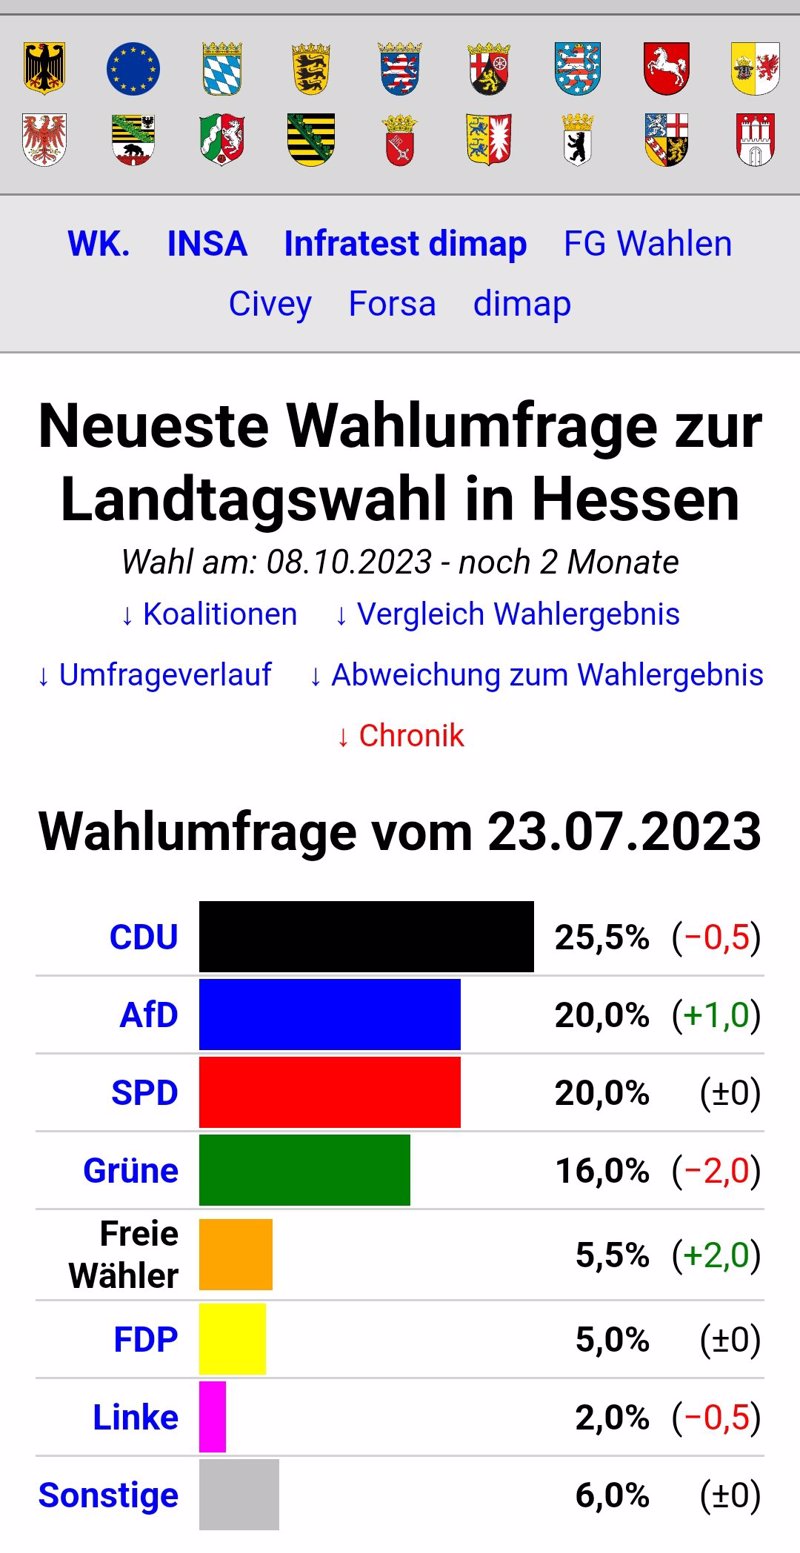 Wahlumfrage von Ende Juli sieht die AfD in Hessen bei 20 Prozent.